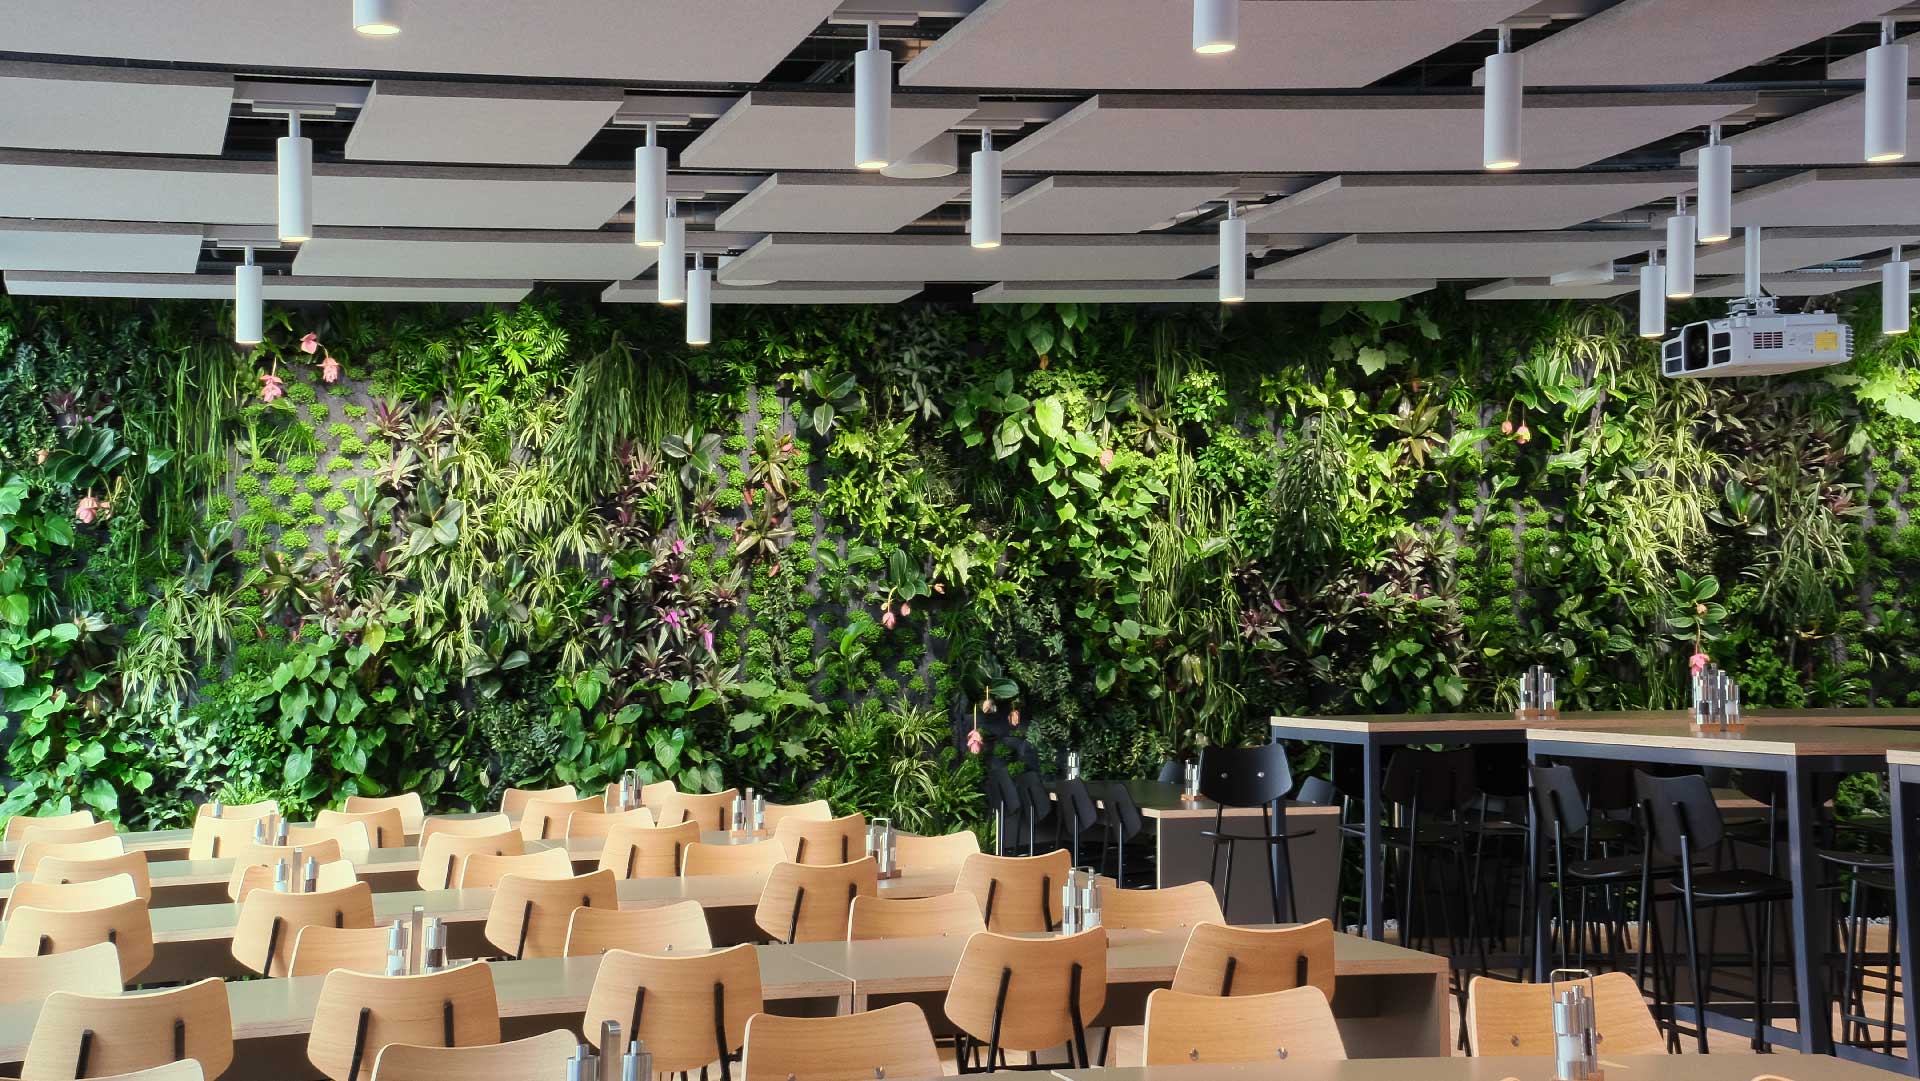 Interior de restaurante moderno con hileras de mesas y sillas de madera, una zona de bar y una gran pared vegetal en la pared.